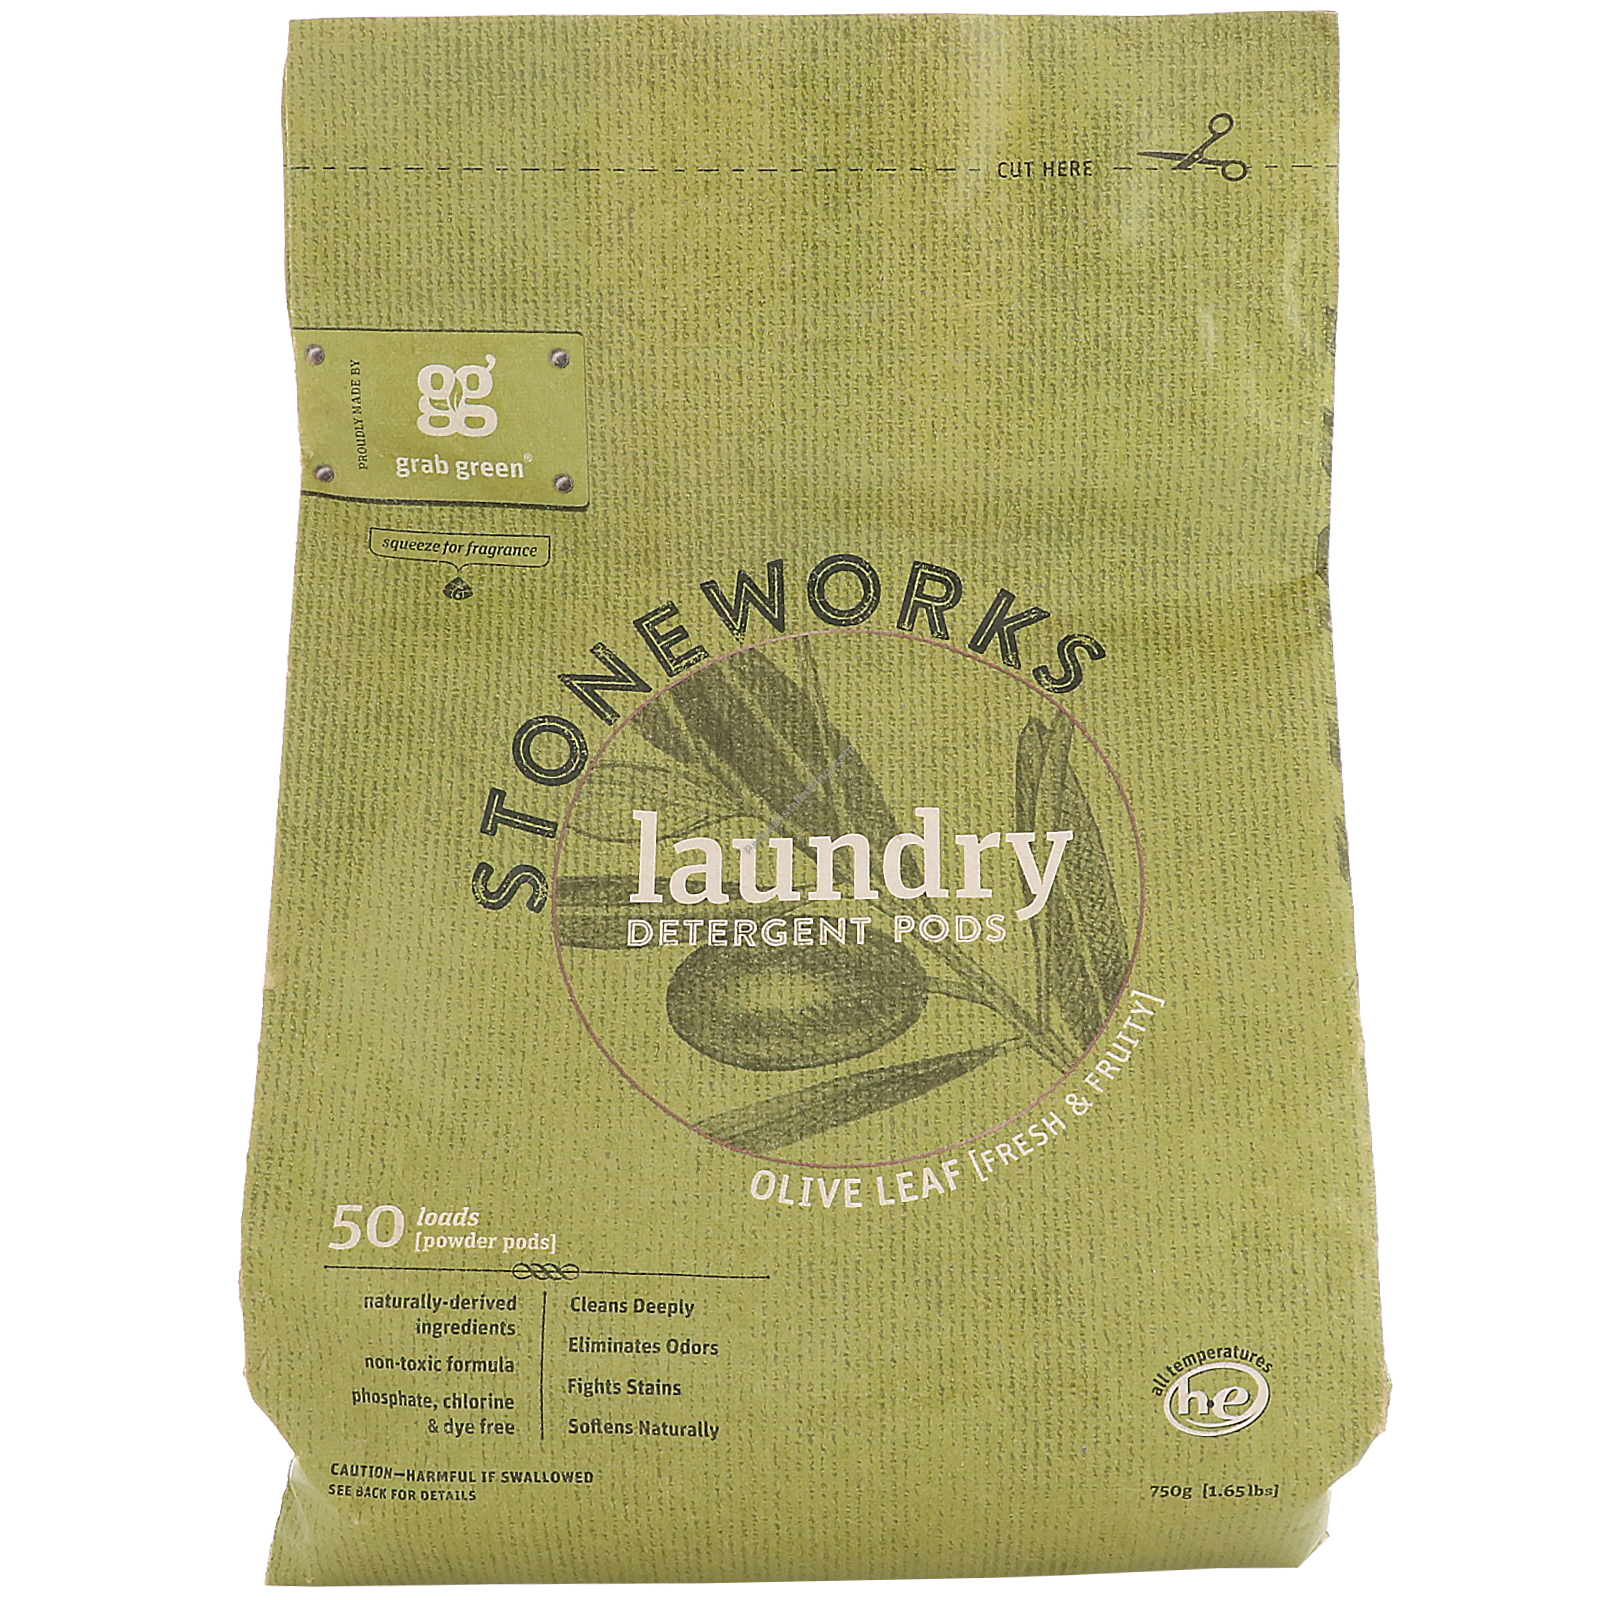 Product Image: Stoneworks Laundry Pods Olive Leaf